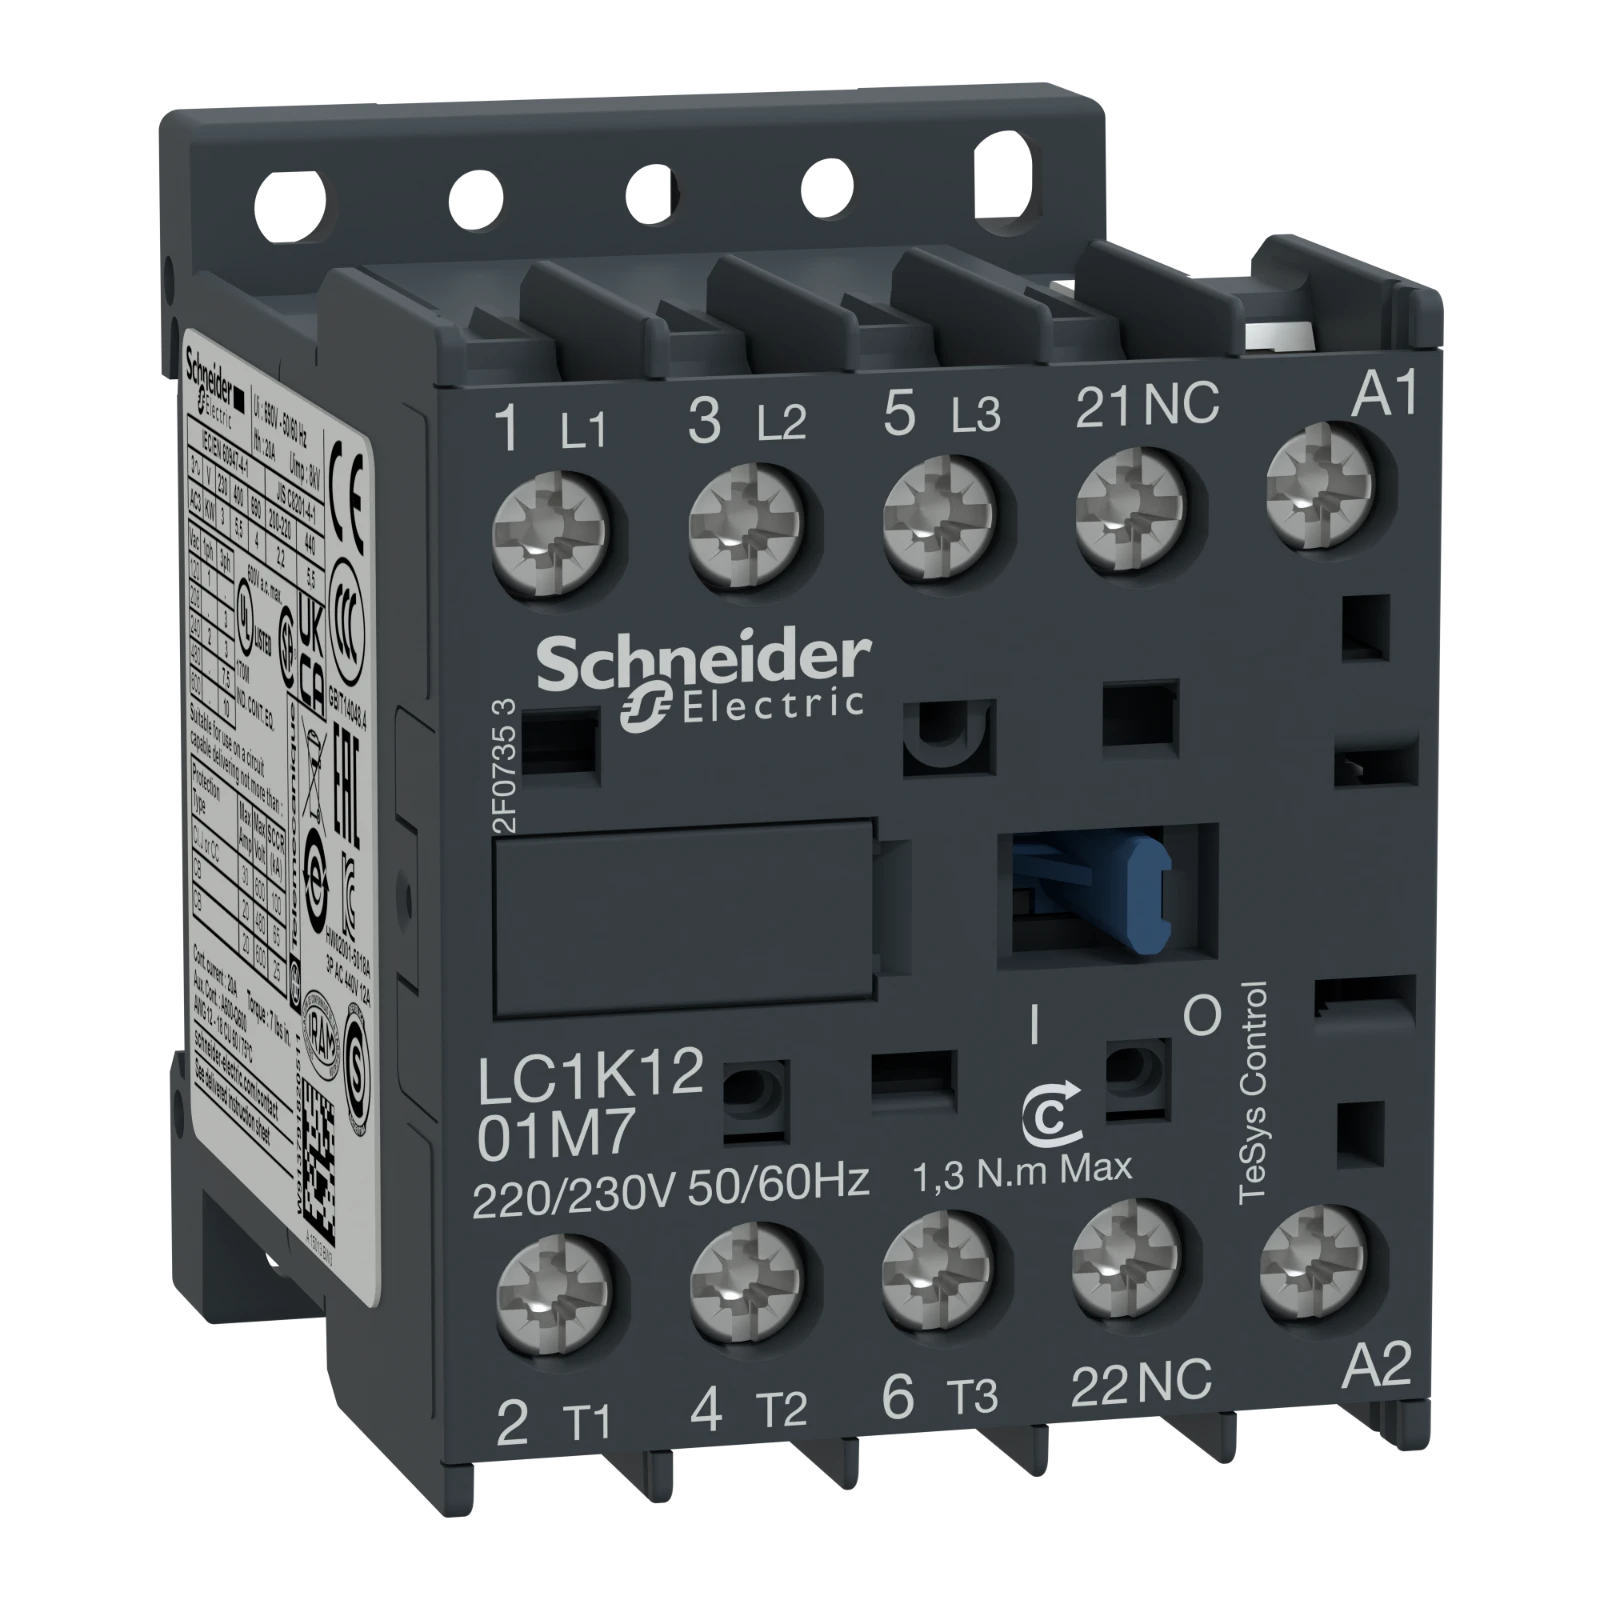 2338624 - Schneider Electric LC1K1201M7